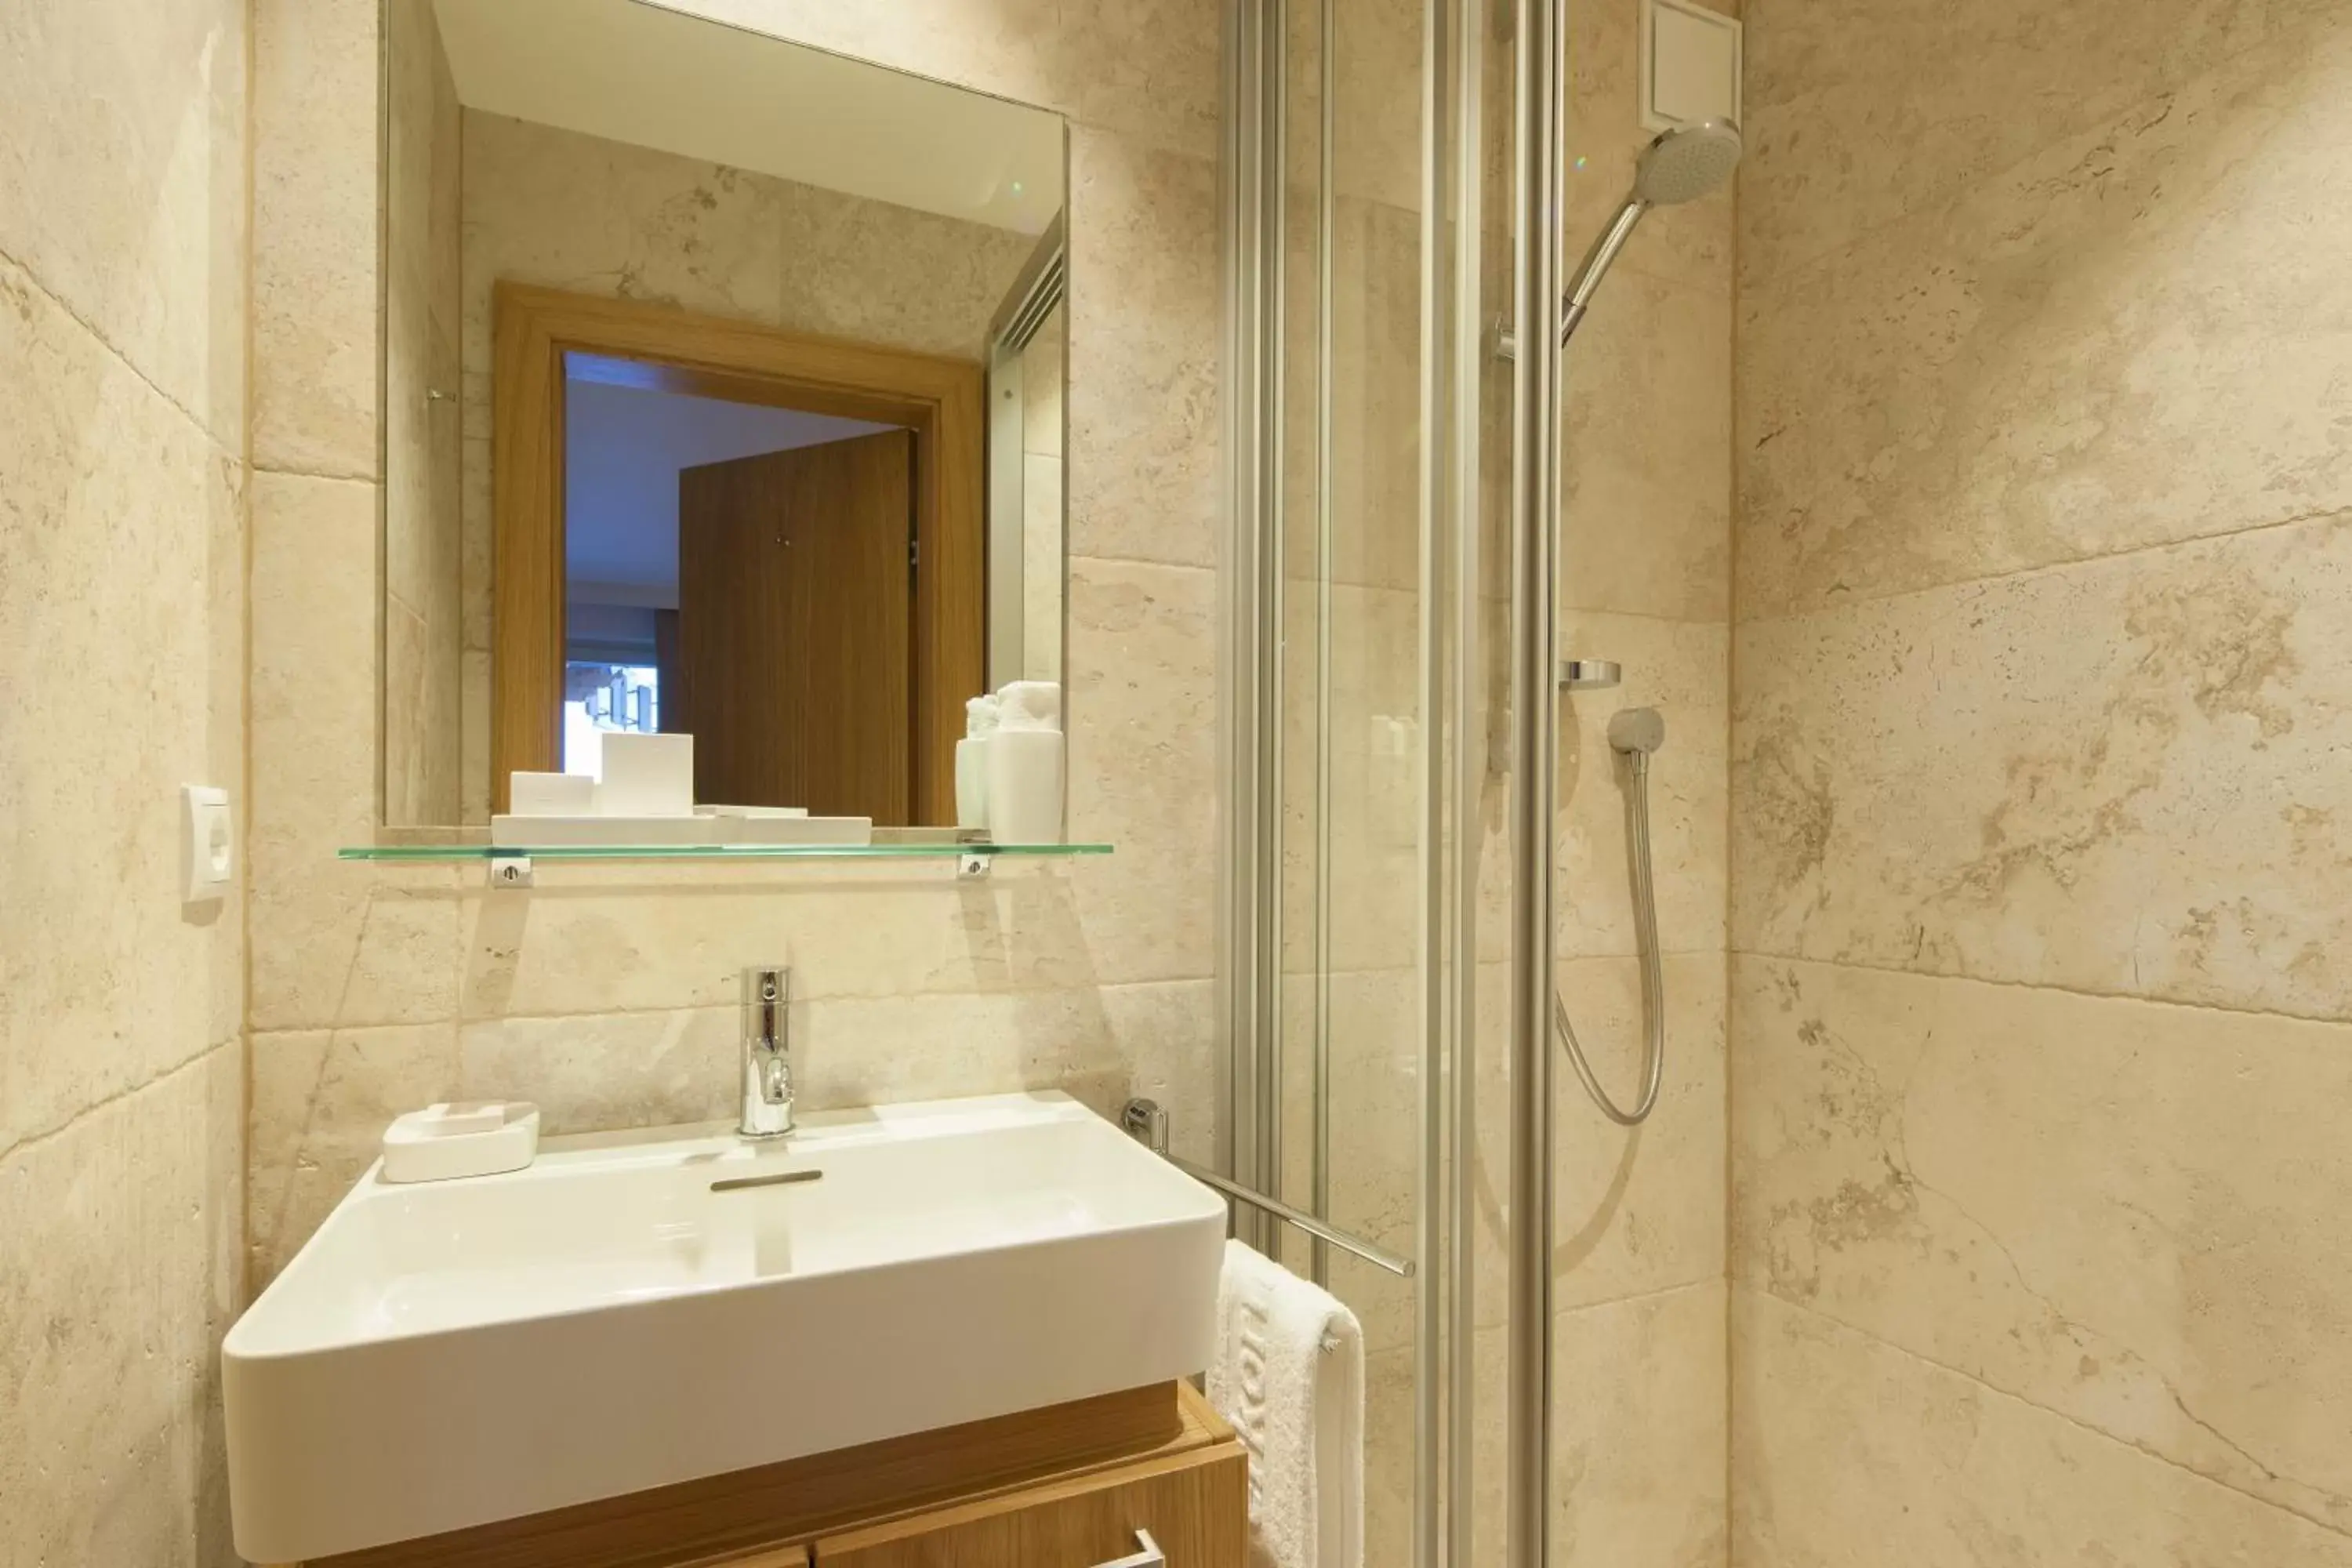 Shower, Bathroom in Pfefferkorn's Hotel